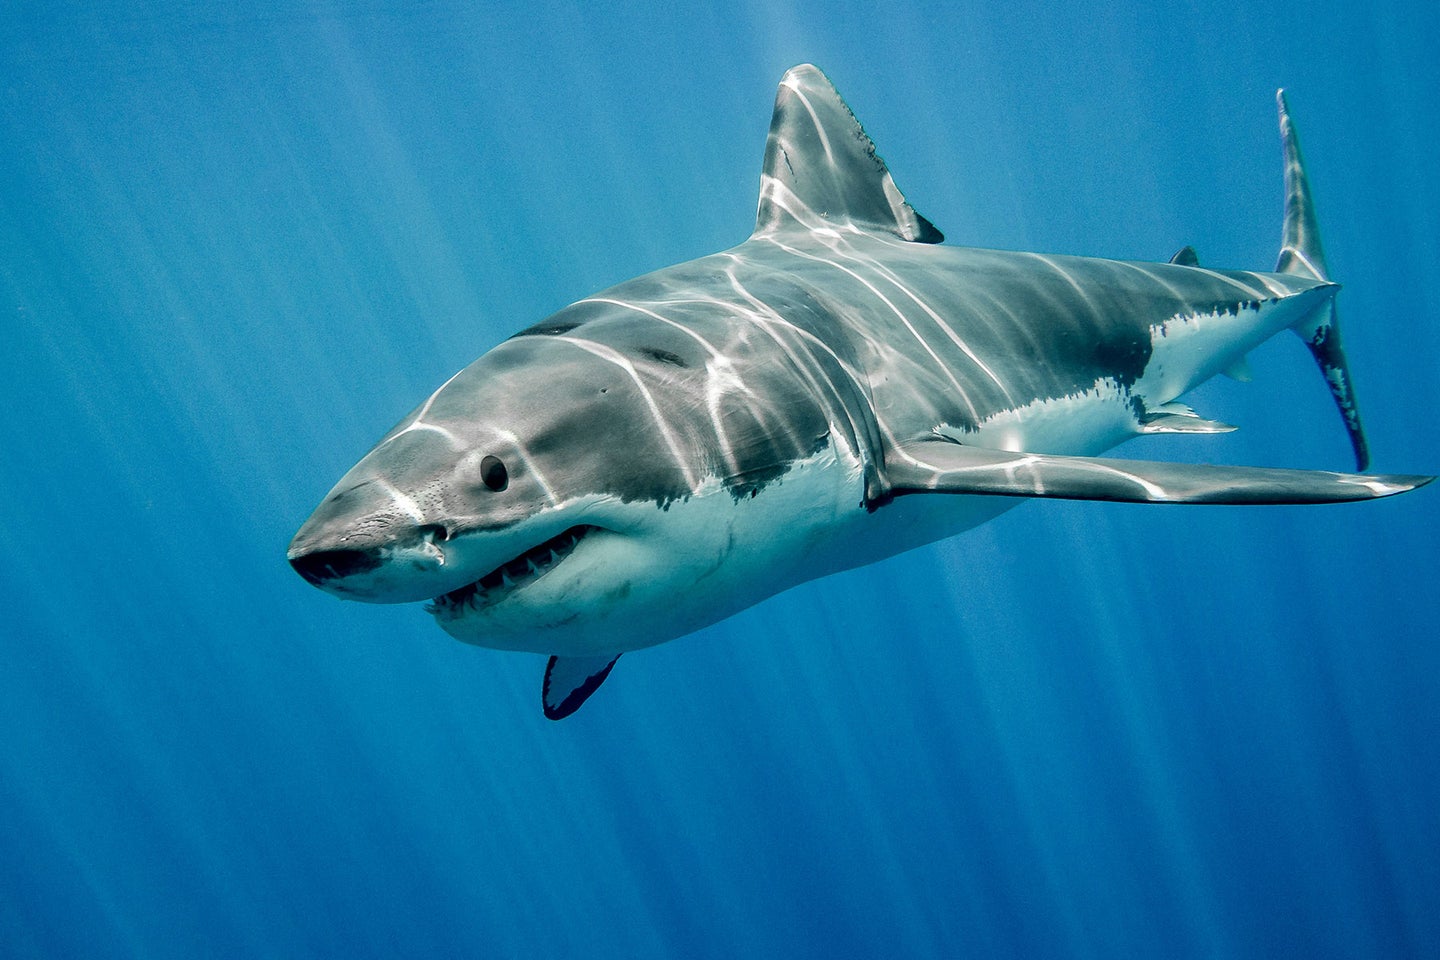 A great white shark swims through a blue ocean.